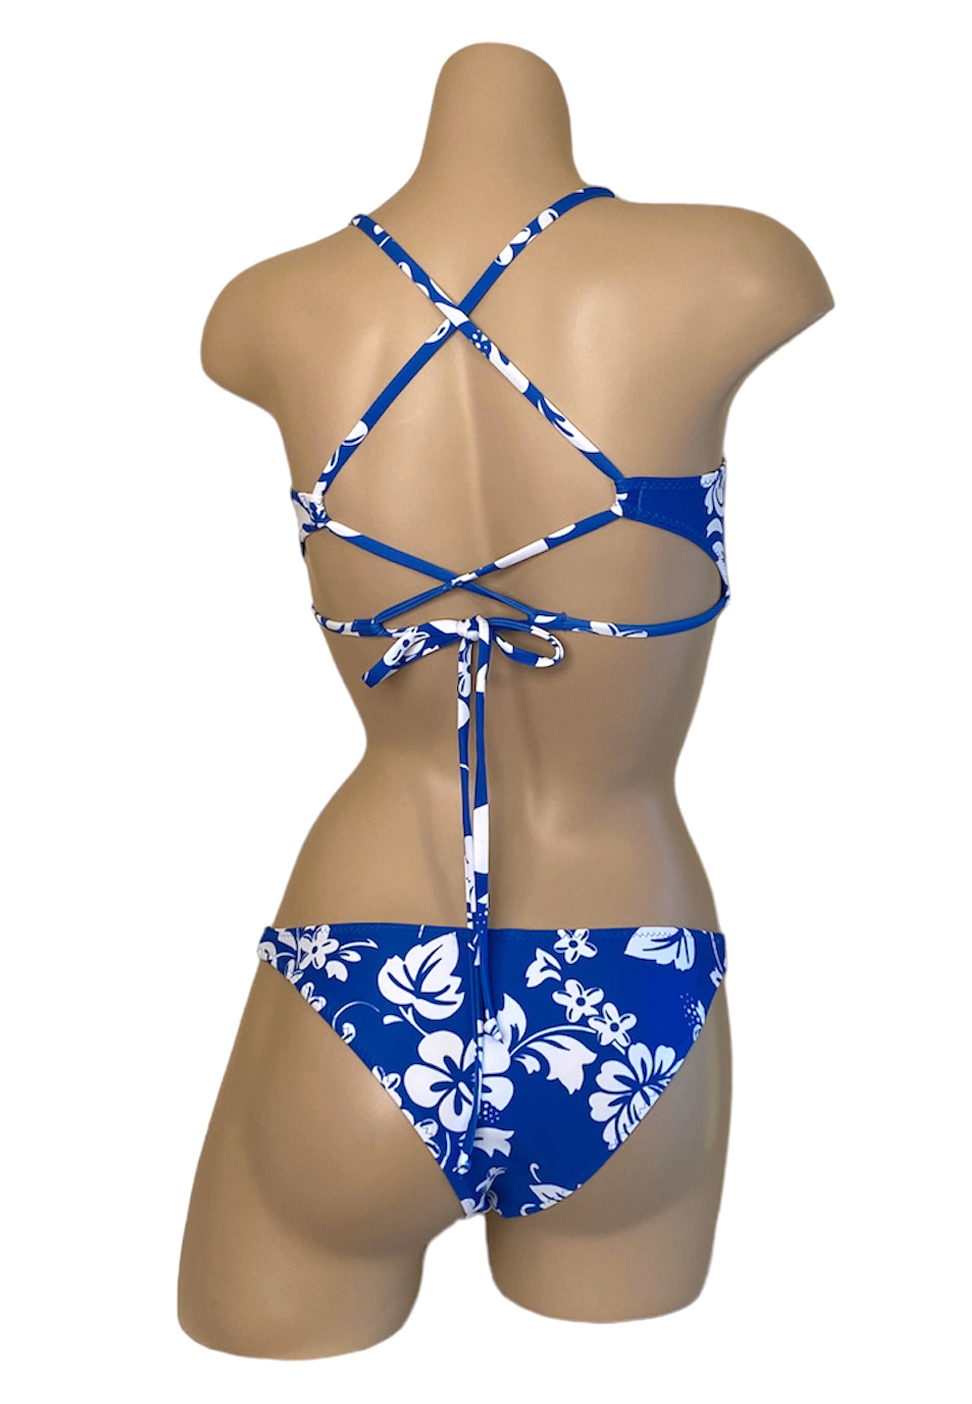 low waist bikini bottoms with peek a boo bikini top in blue hibiscus print back view